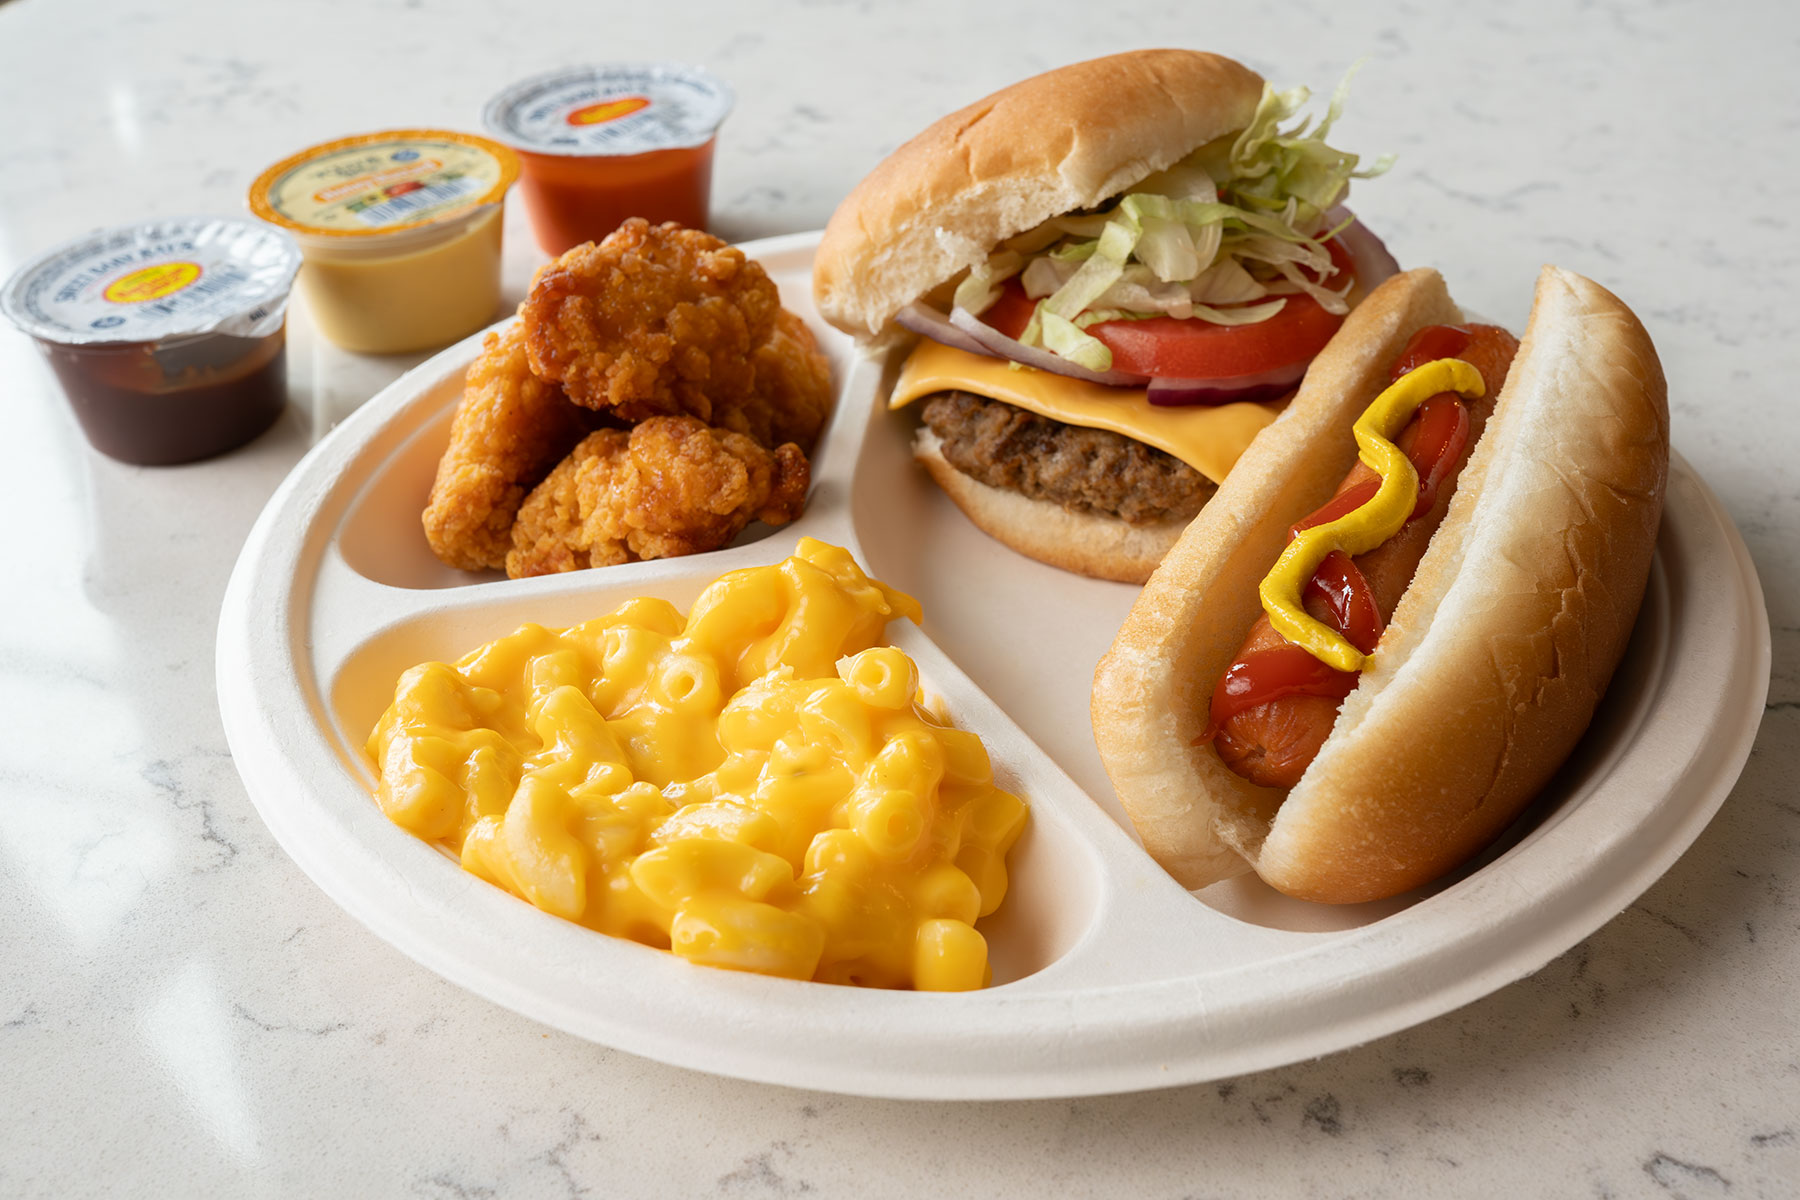 hot dog, cheeseburger, chicken bites, mac & cheese